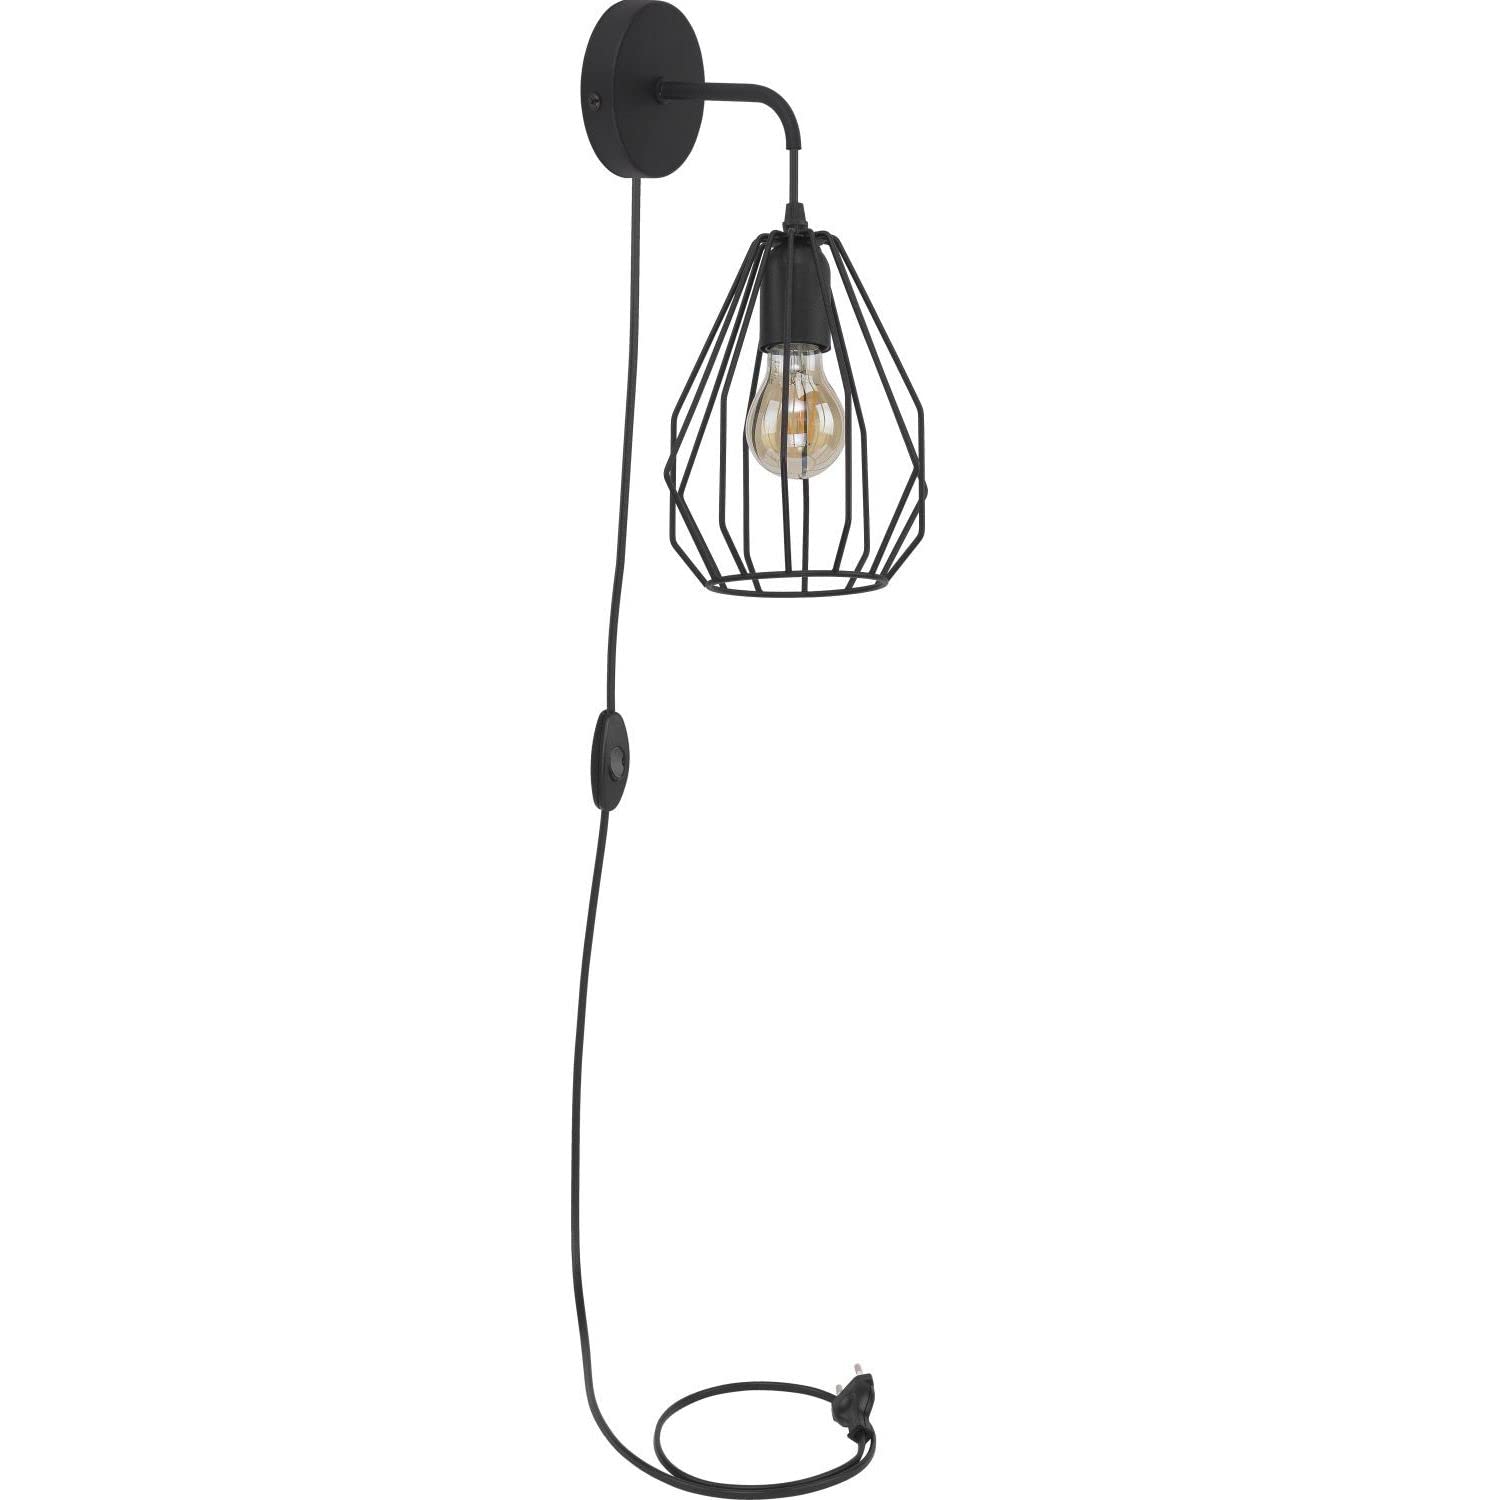 Licht-Erlebnisse Wandleuchte mit Kabel Stecker & Schalte aus Metall Käfig-Leuchte in schwarz E27 wechselbar EU Produkt für Schlafzimmer Wohnzimmer Wandlampe Innen